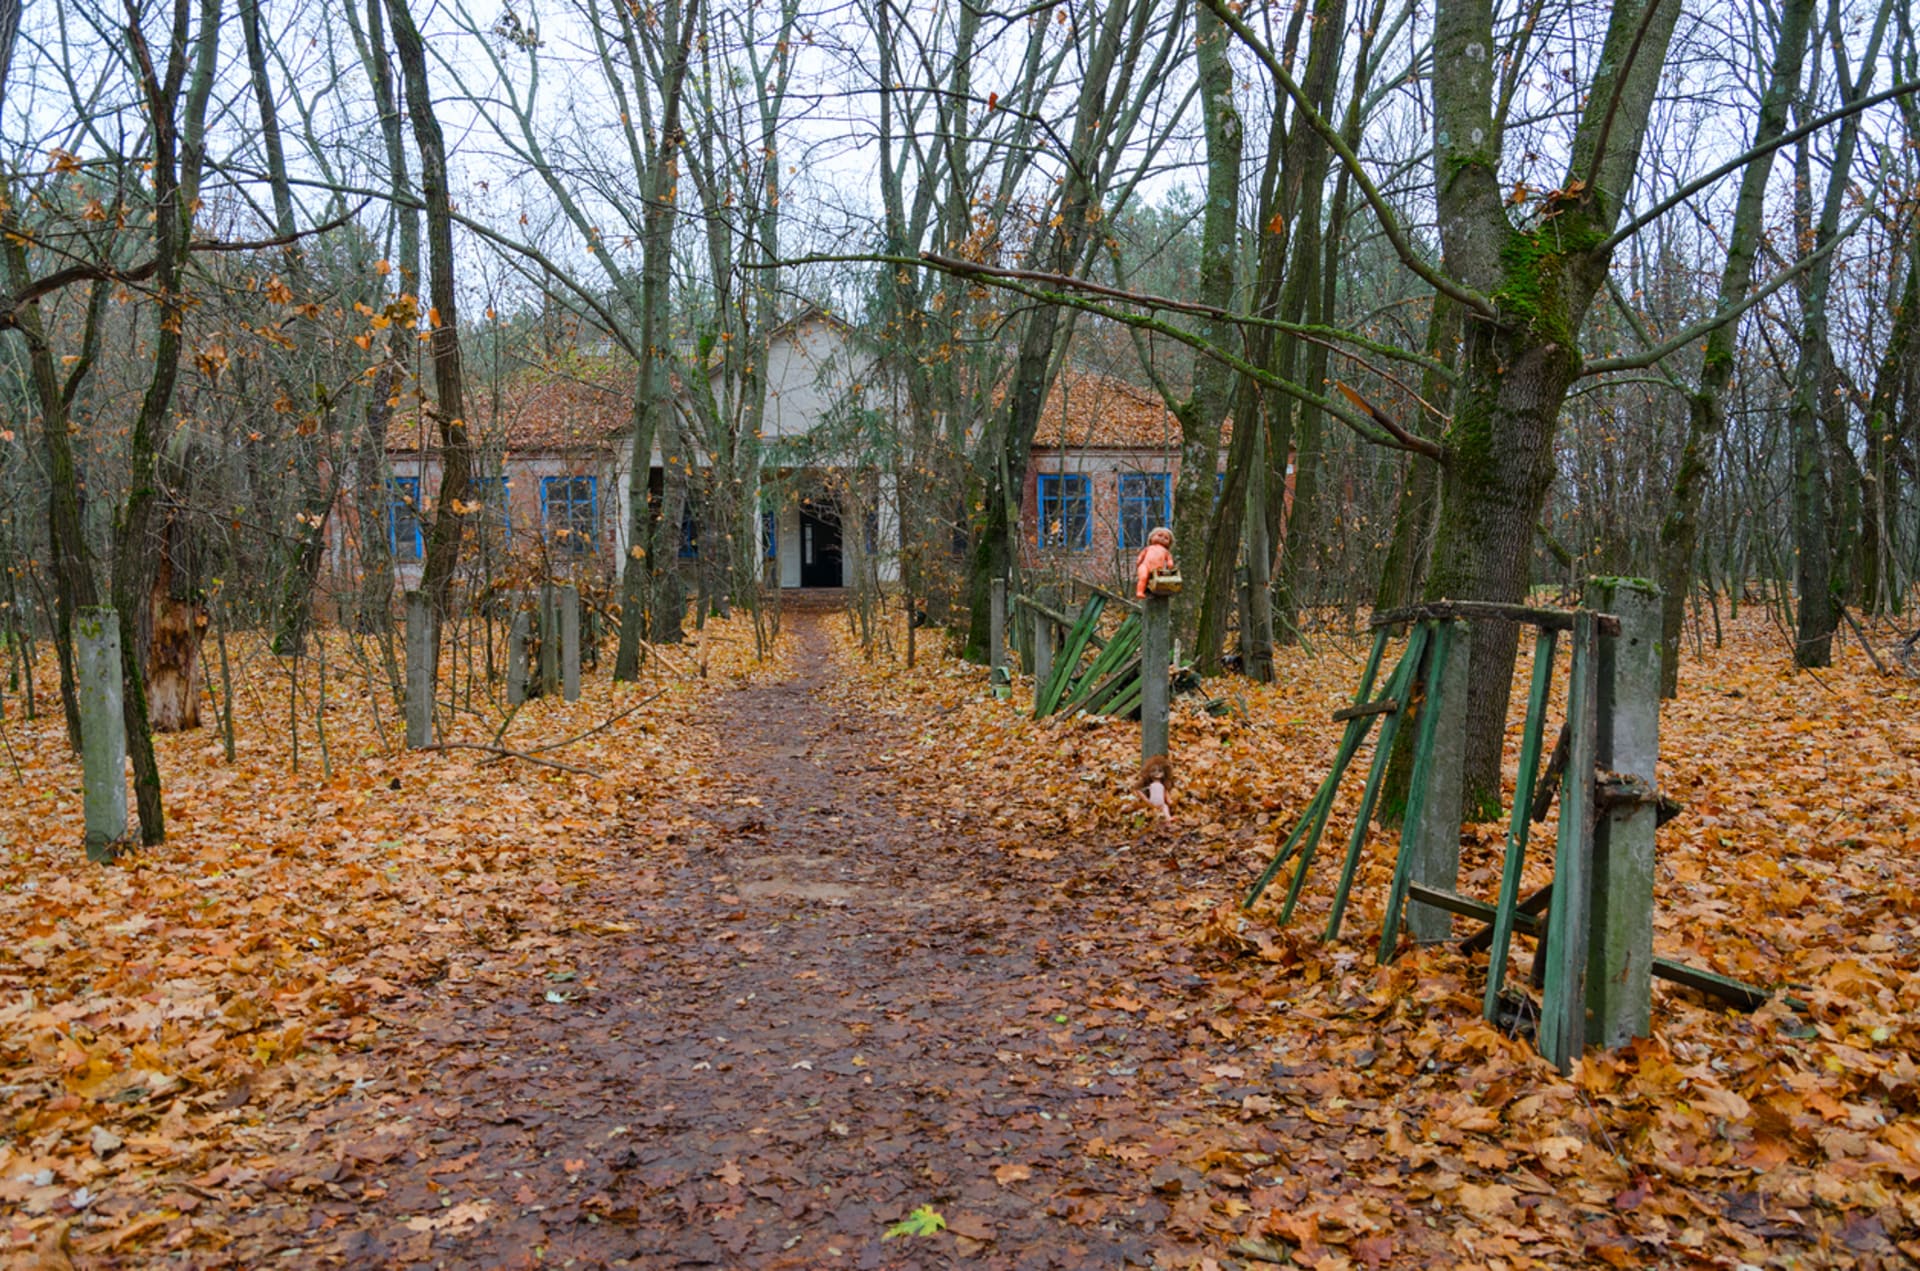 Po katastrofě Černobylu byla vesnice kontaminována radioaktivním spadem a následně evakuována a v současnosti je obklopena uzavřenou černobylskou zónou.